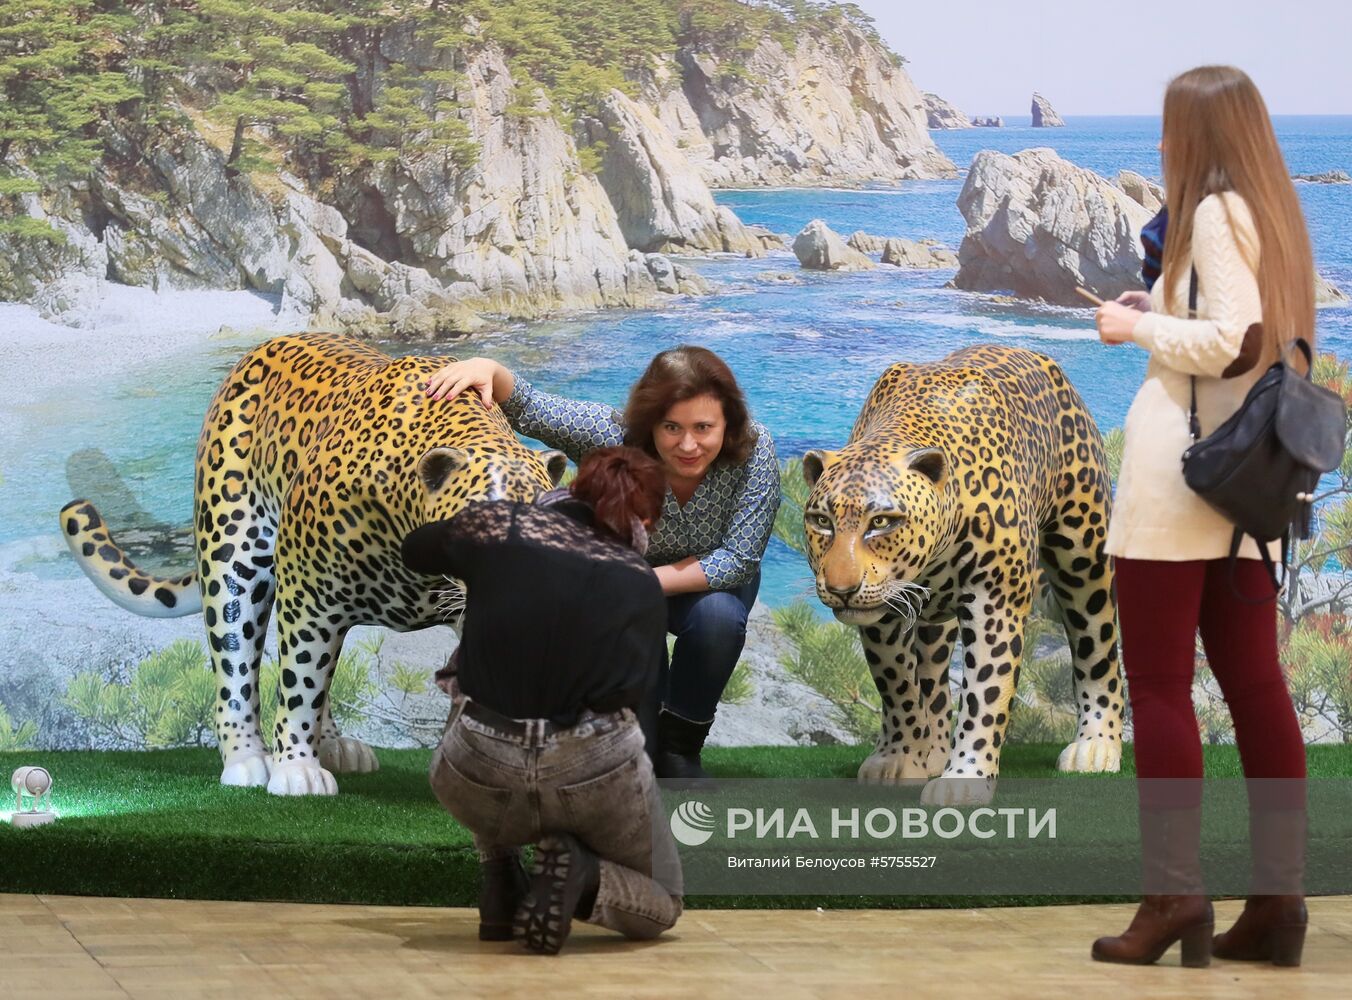 Общероссийский фестиваль природы "Первозданная Россия"